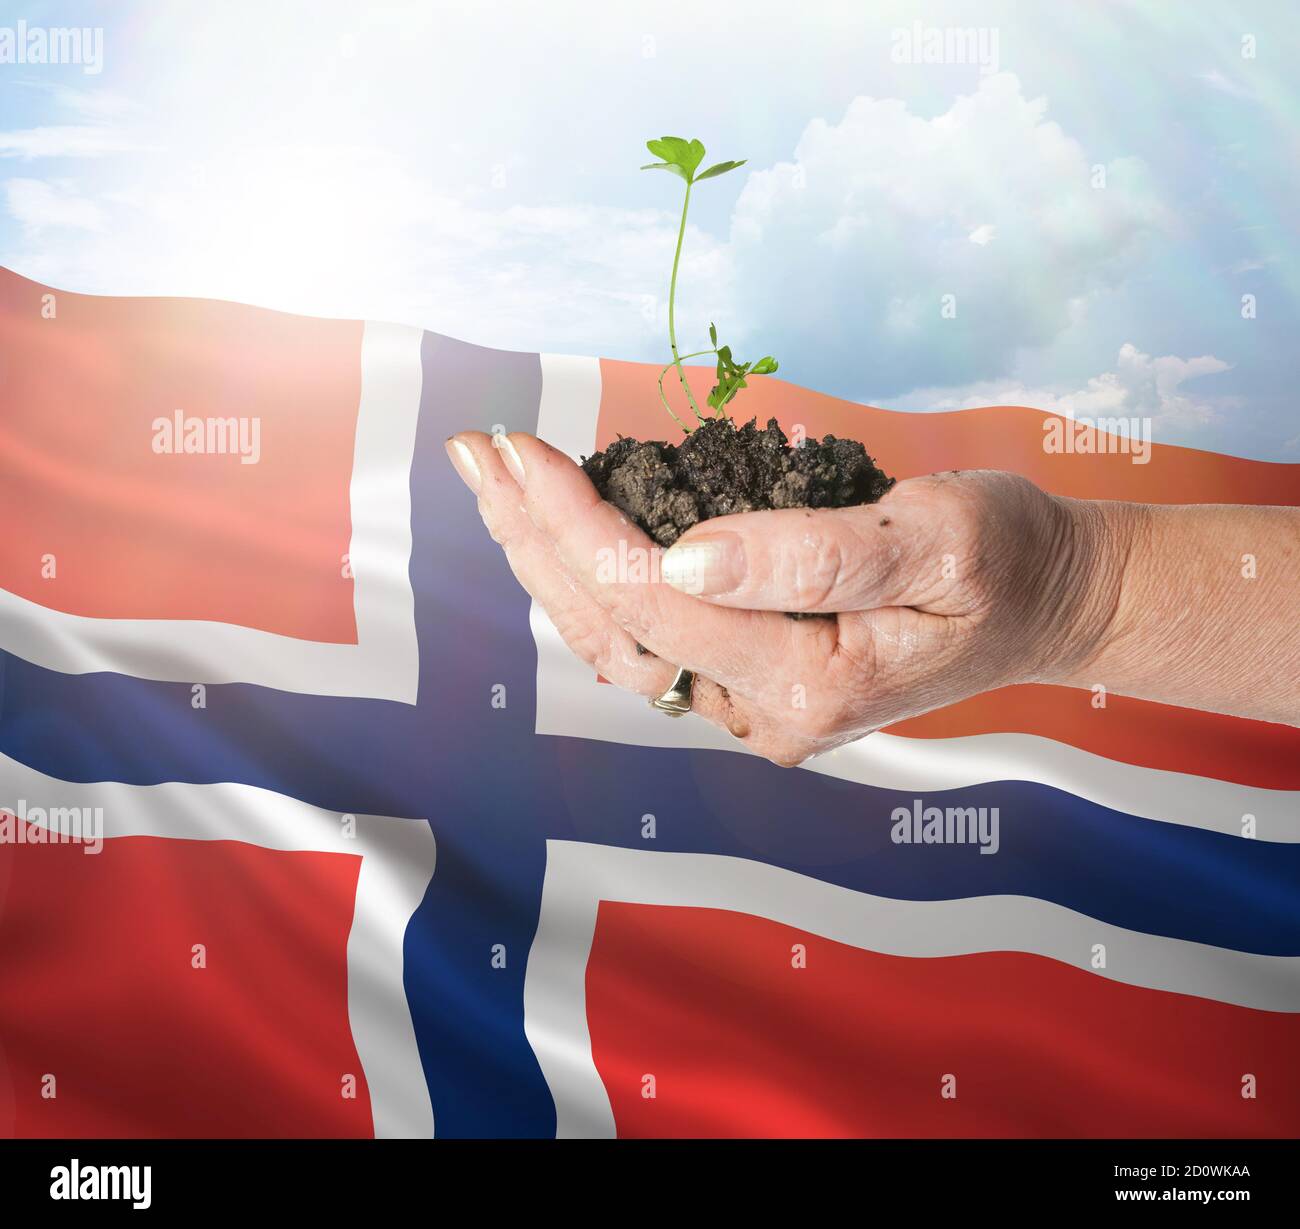 Noruega crecimiento y nuevo comienzo. Concepto de energía renovable verde y ecología. Mano sosteniendo planta joven. Foto de stock